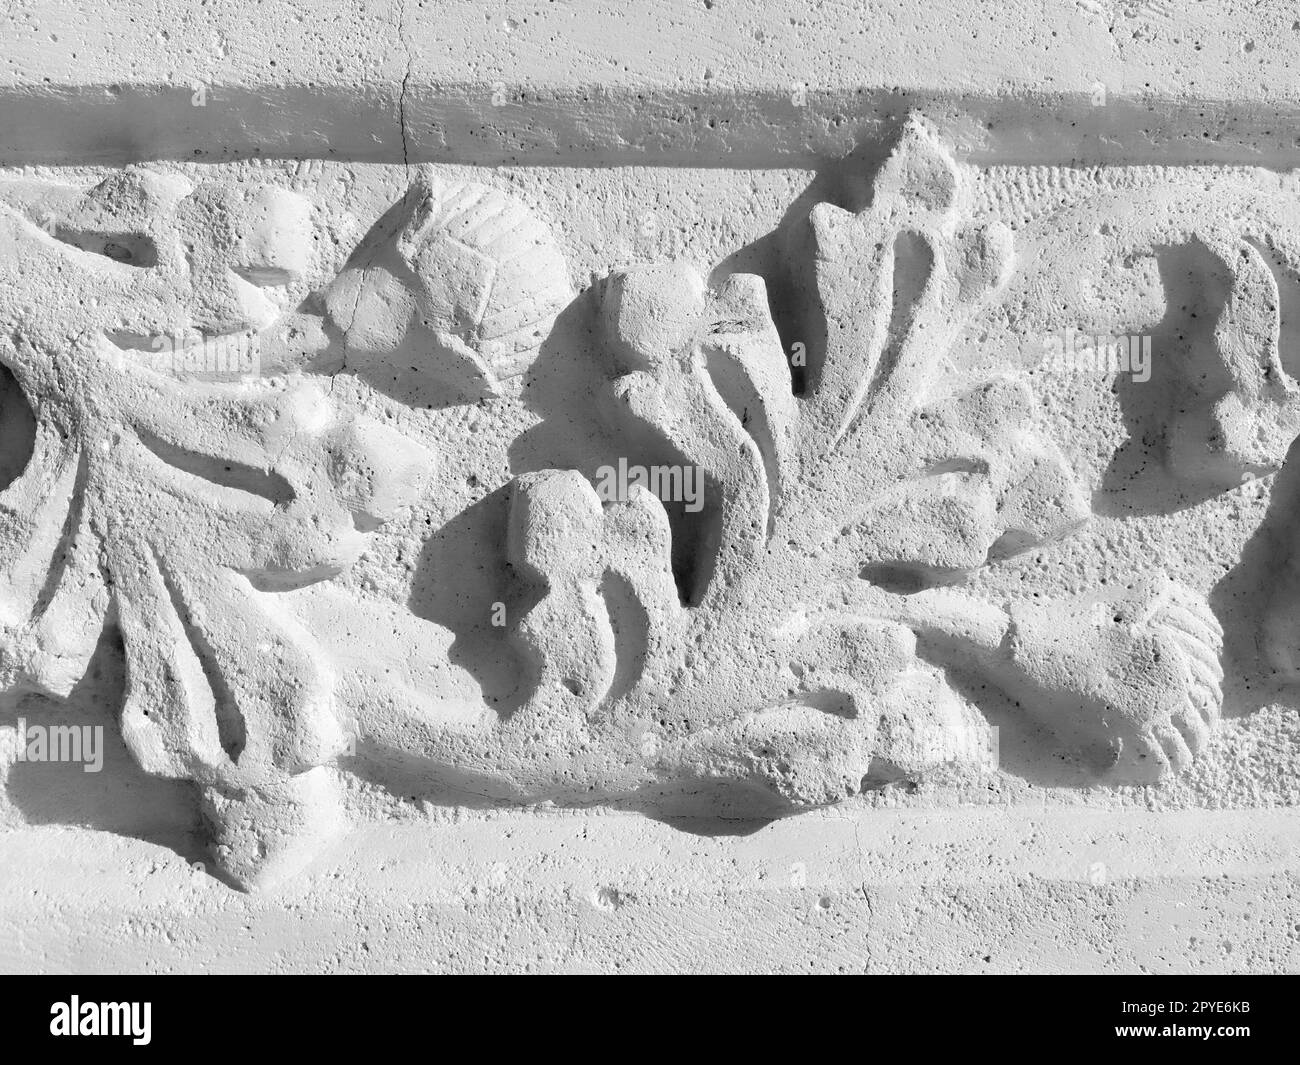 Ziergegenstände, skulpturelle Zeichnung strukturierter Pflanzenelemente. Dekoration der Wand mit Stuck in Dubrovnik, Kroatien. Ein Stück Shamrocks. Acanthus ist eine pflanzliche Vegetation, Blätter sind Stuckelemente. Stockfoto